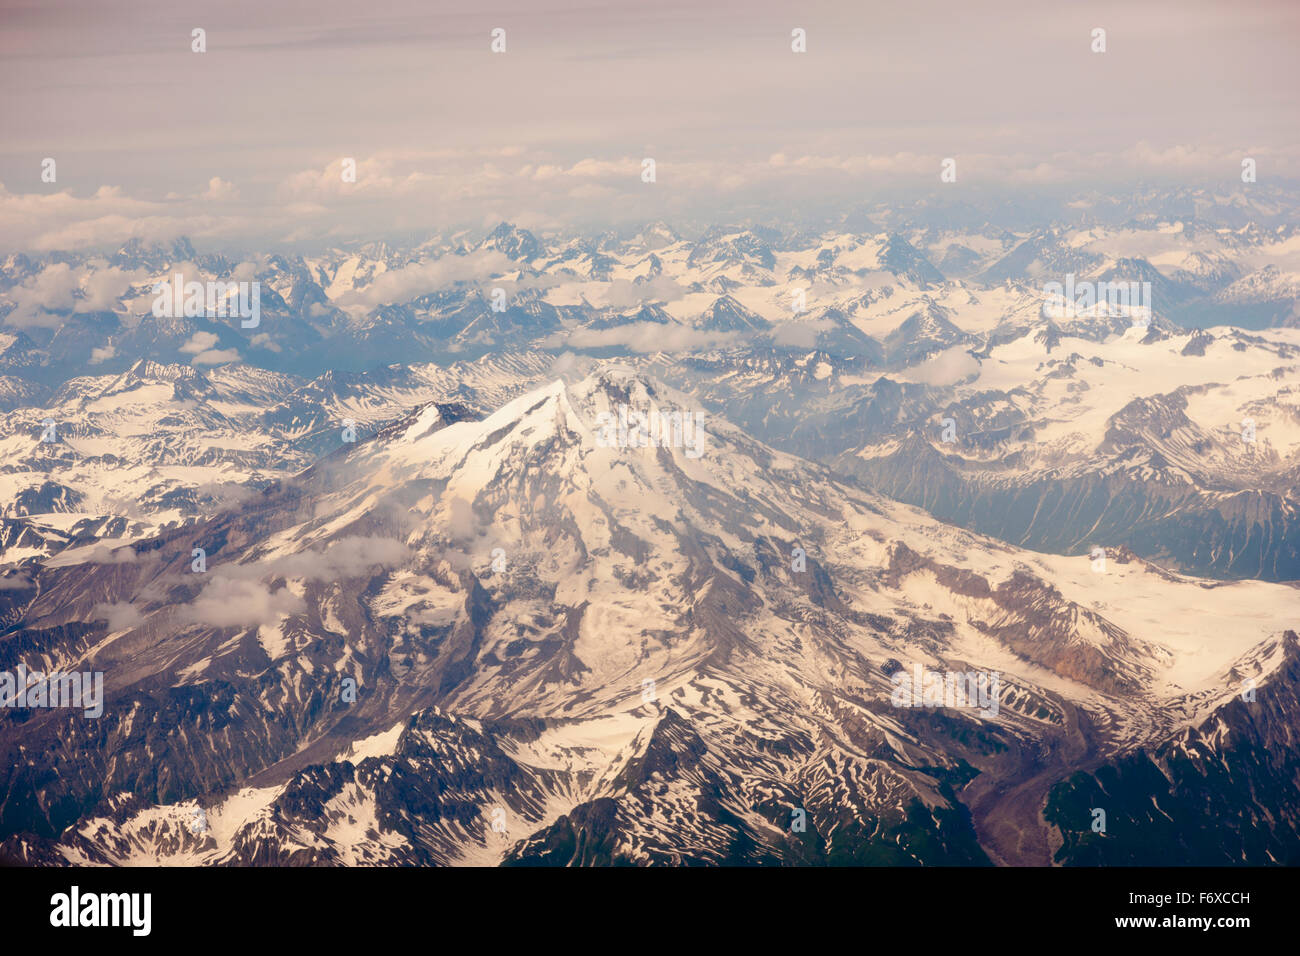 Luftaufnahme von Schnee bedeckten Mount Iliamna und die umliegenden Berge der Aleutenkette, Alaska-Halbinsel, südwestlichen Alaska, USA, Sommer Stockfoto